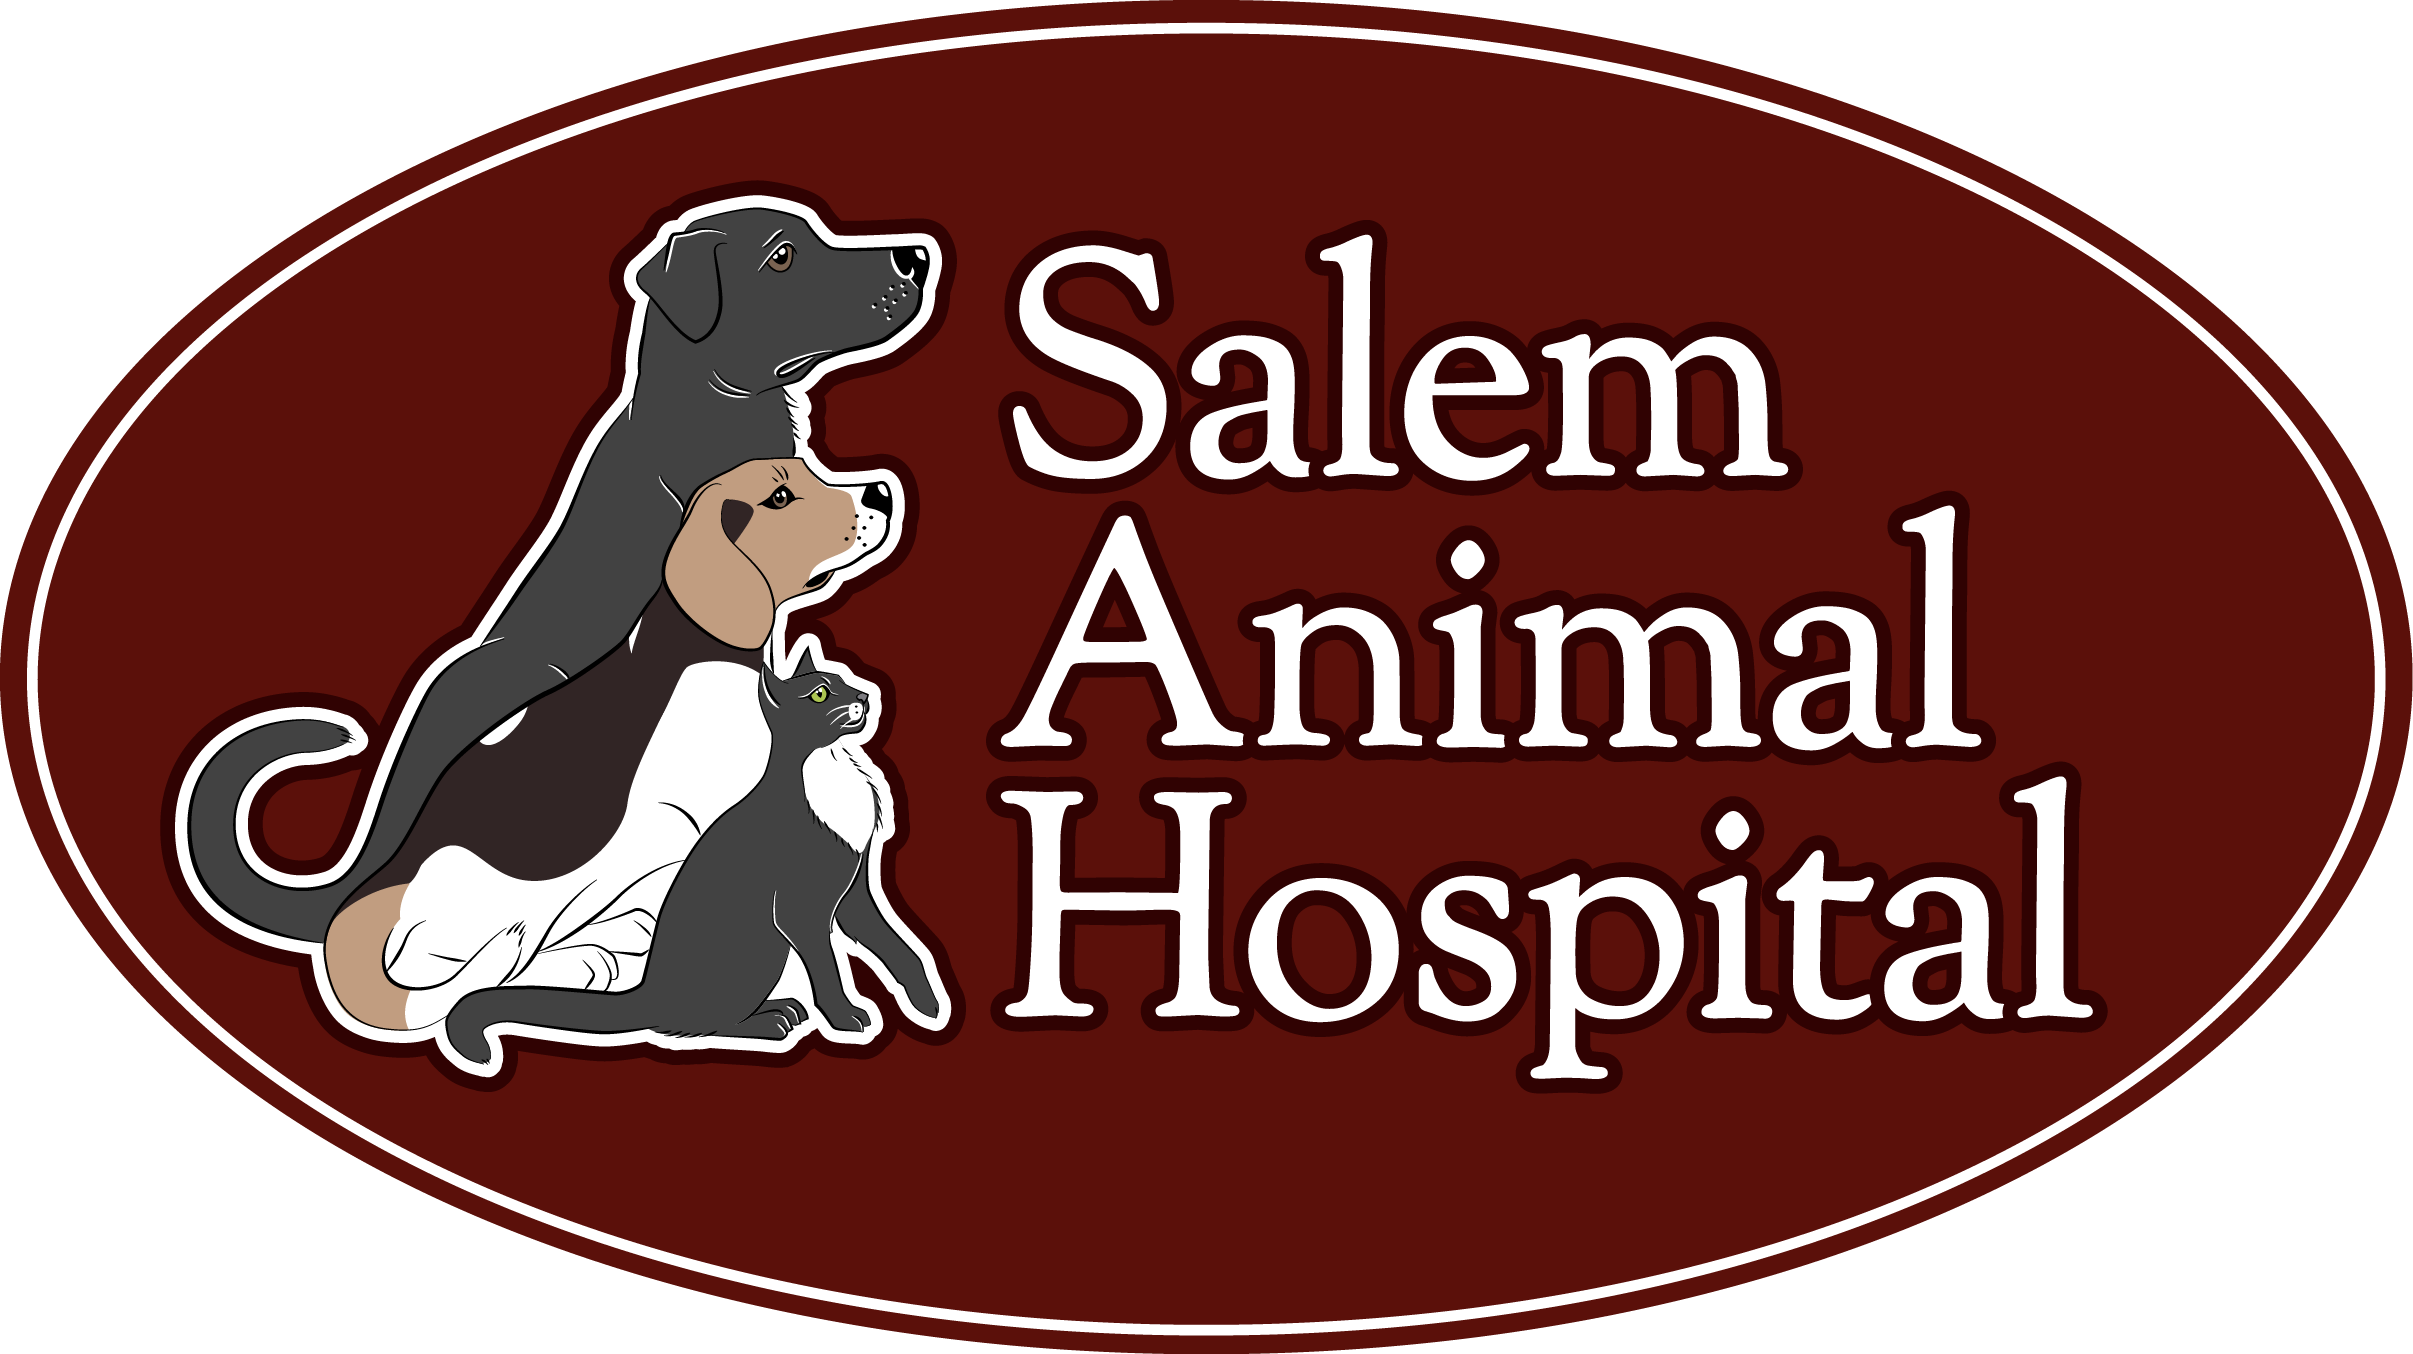 Salem Animal Hospital logo RGB